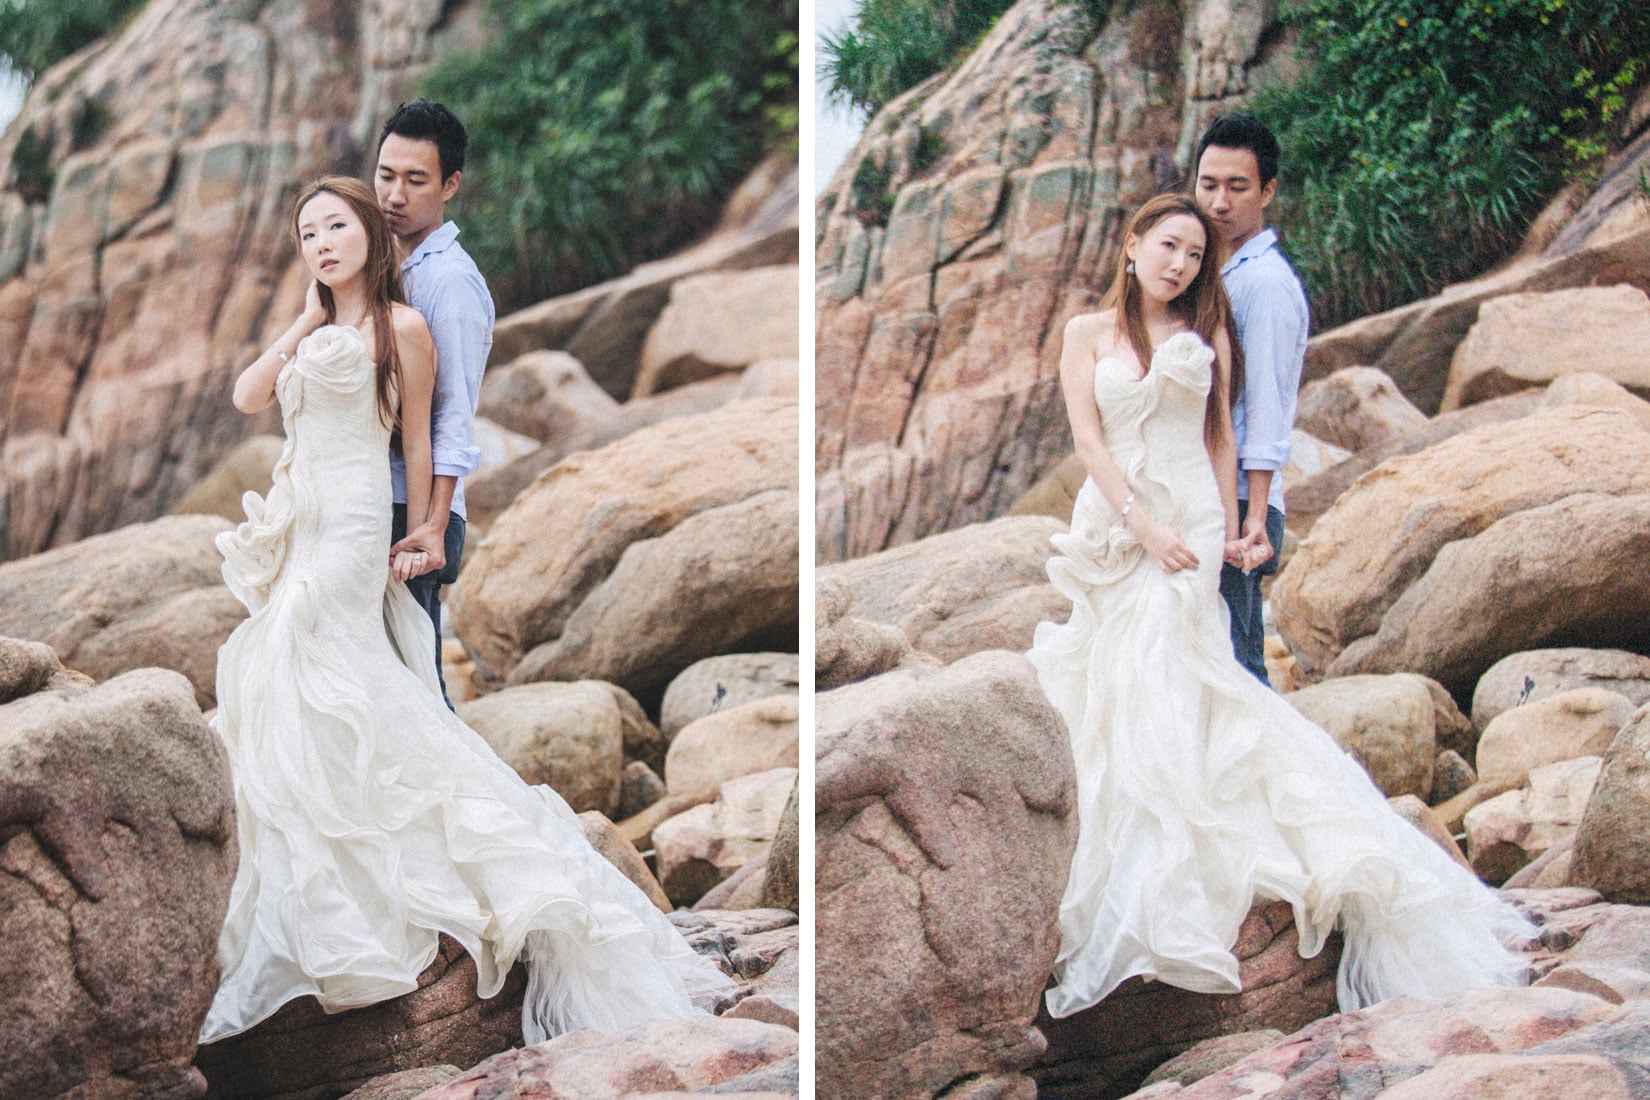 Hong Kong Pre Wedding photography / Joanne & Sam pre wedding photos